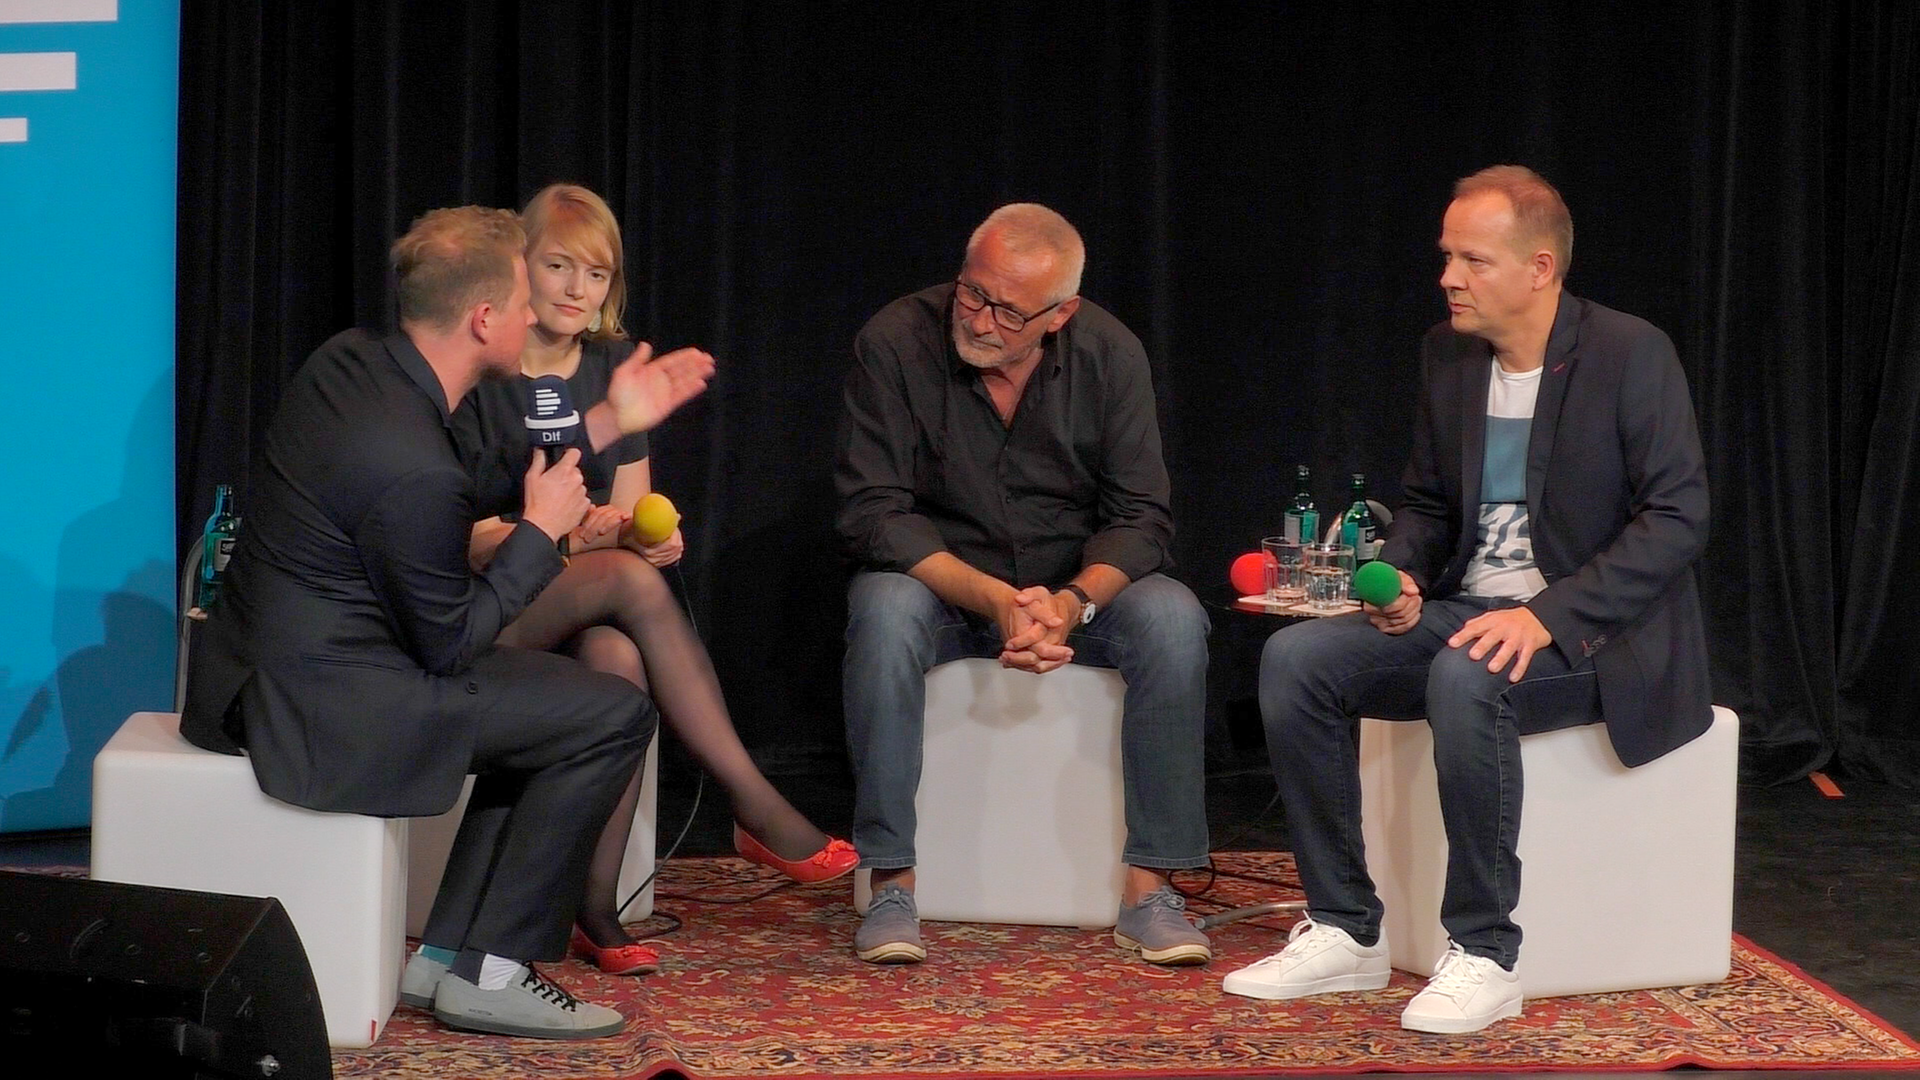 Martin Zingsheim mit seinen Gästen Ria Schröder, Konstantin Wecker und Thomas Schreckenberger